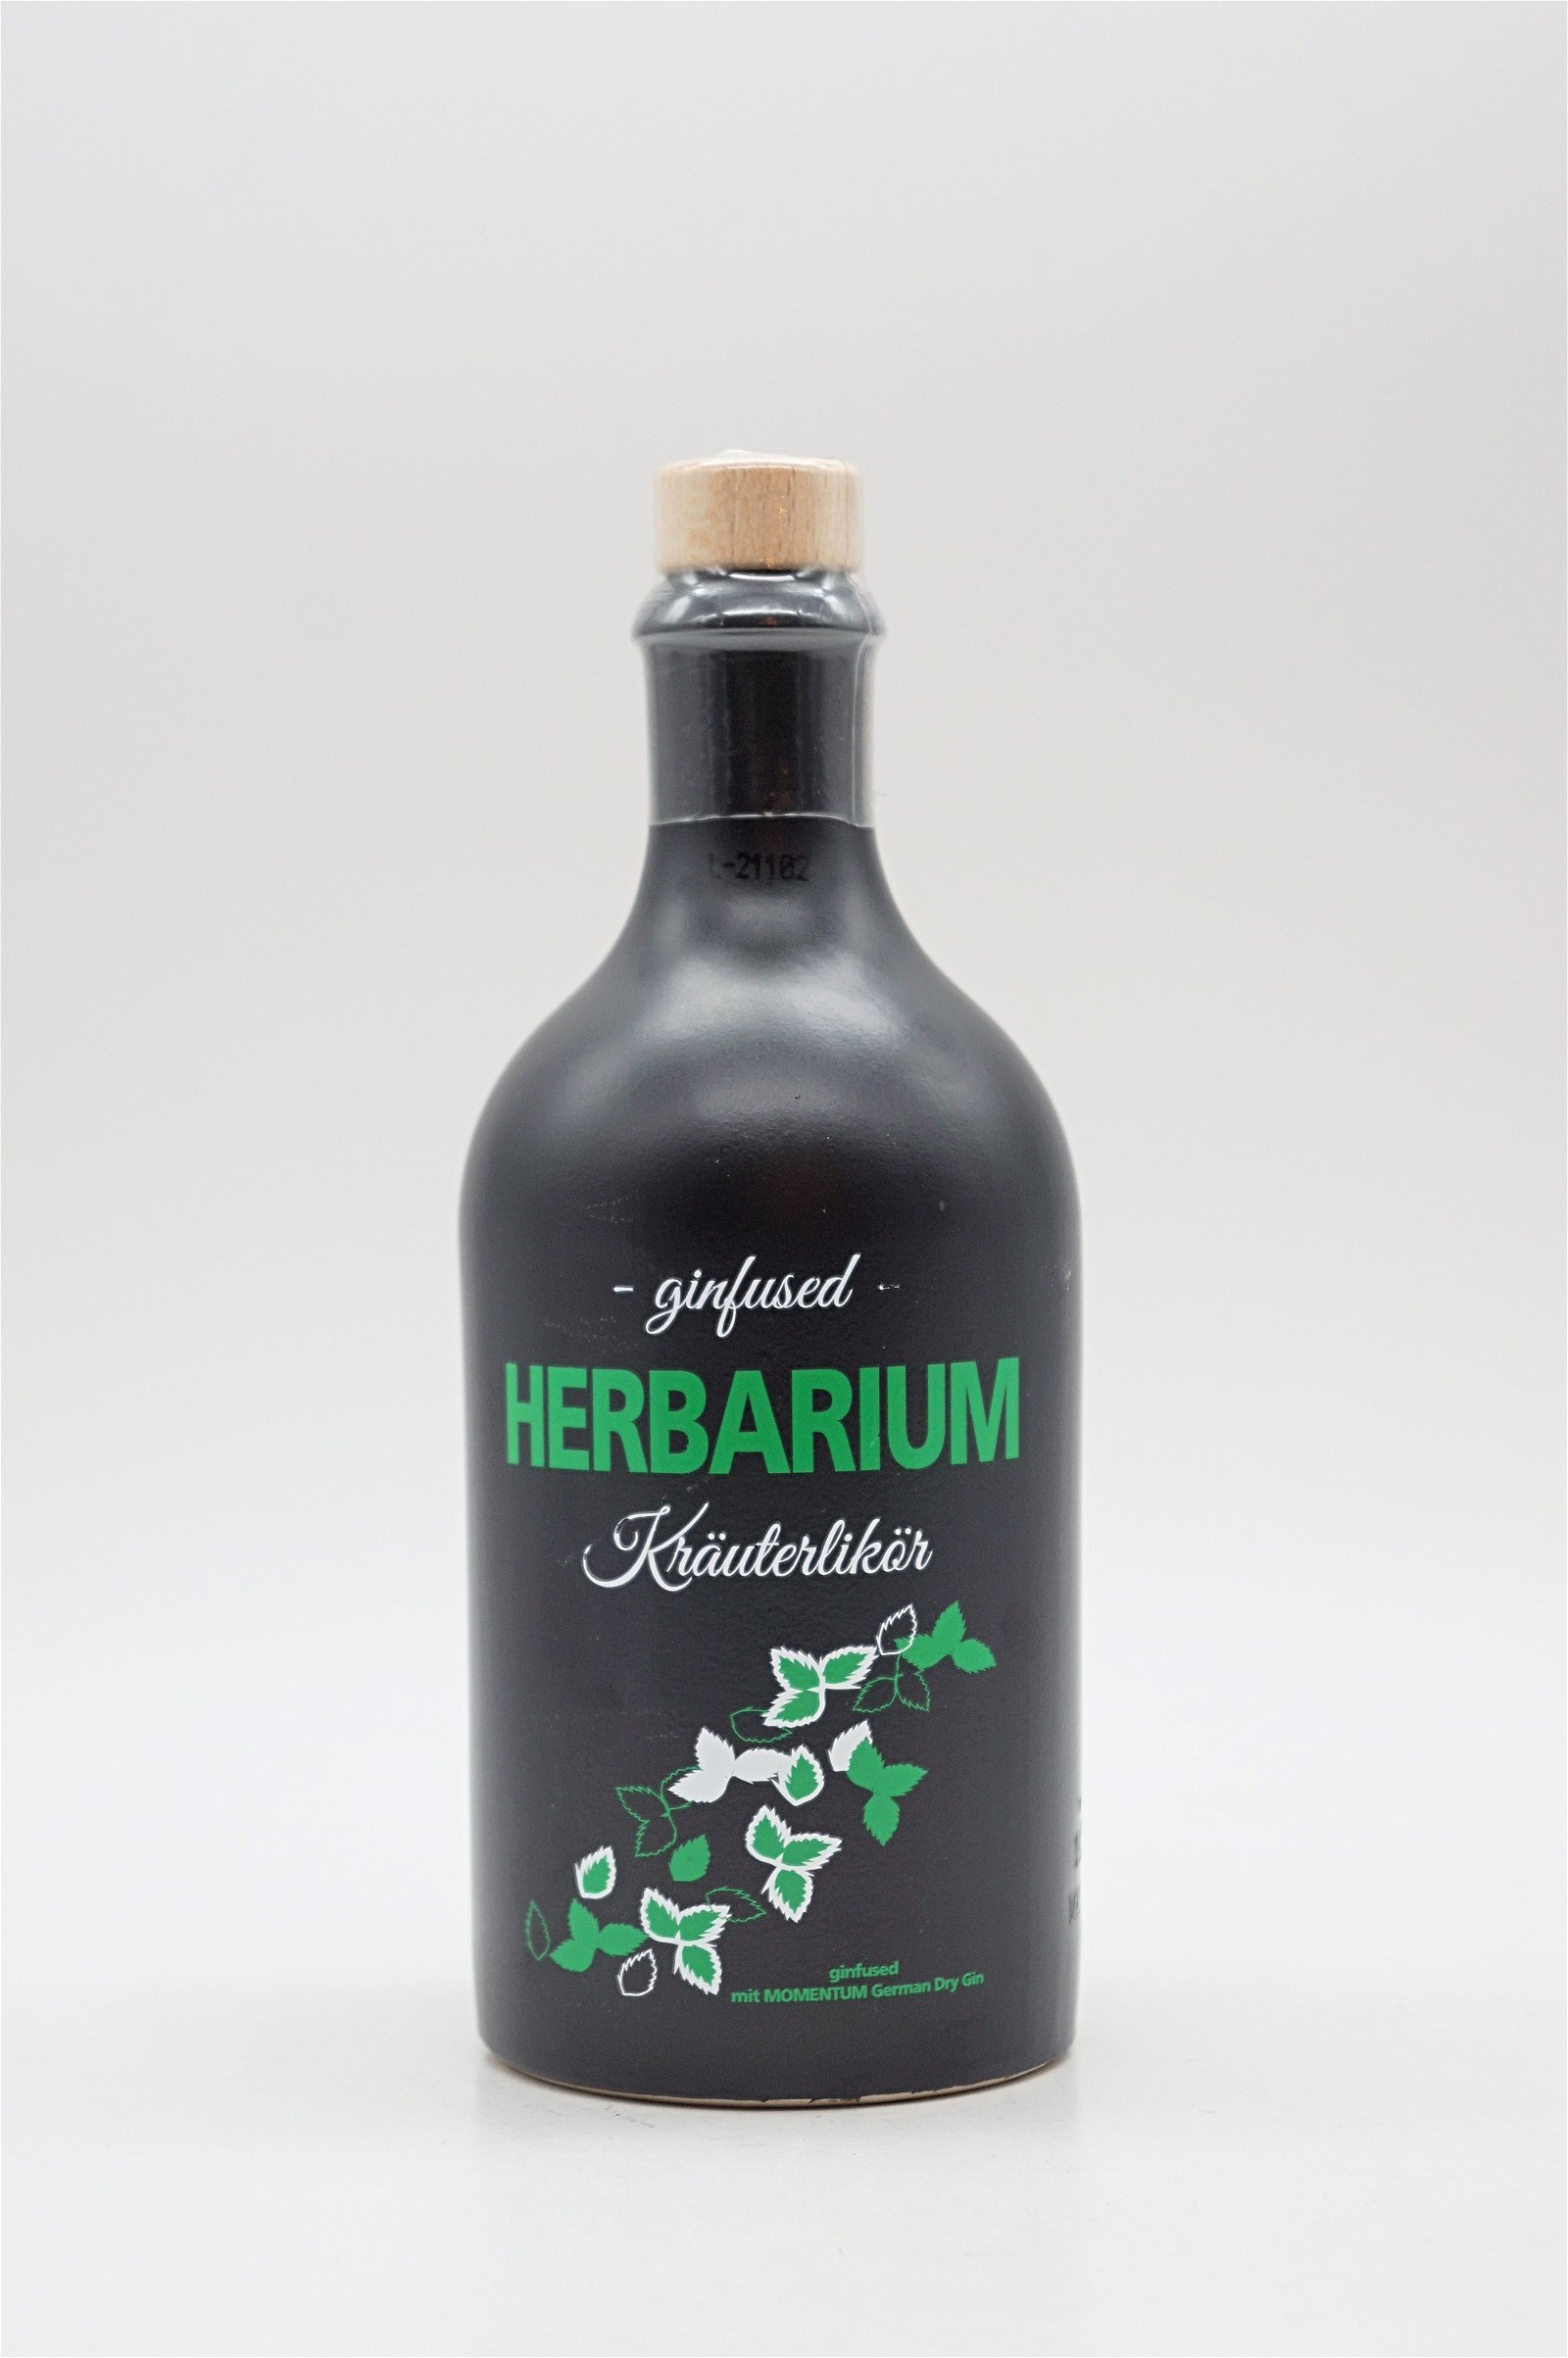 Herbarium ginfused Kräuterlikör 